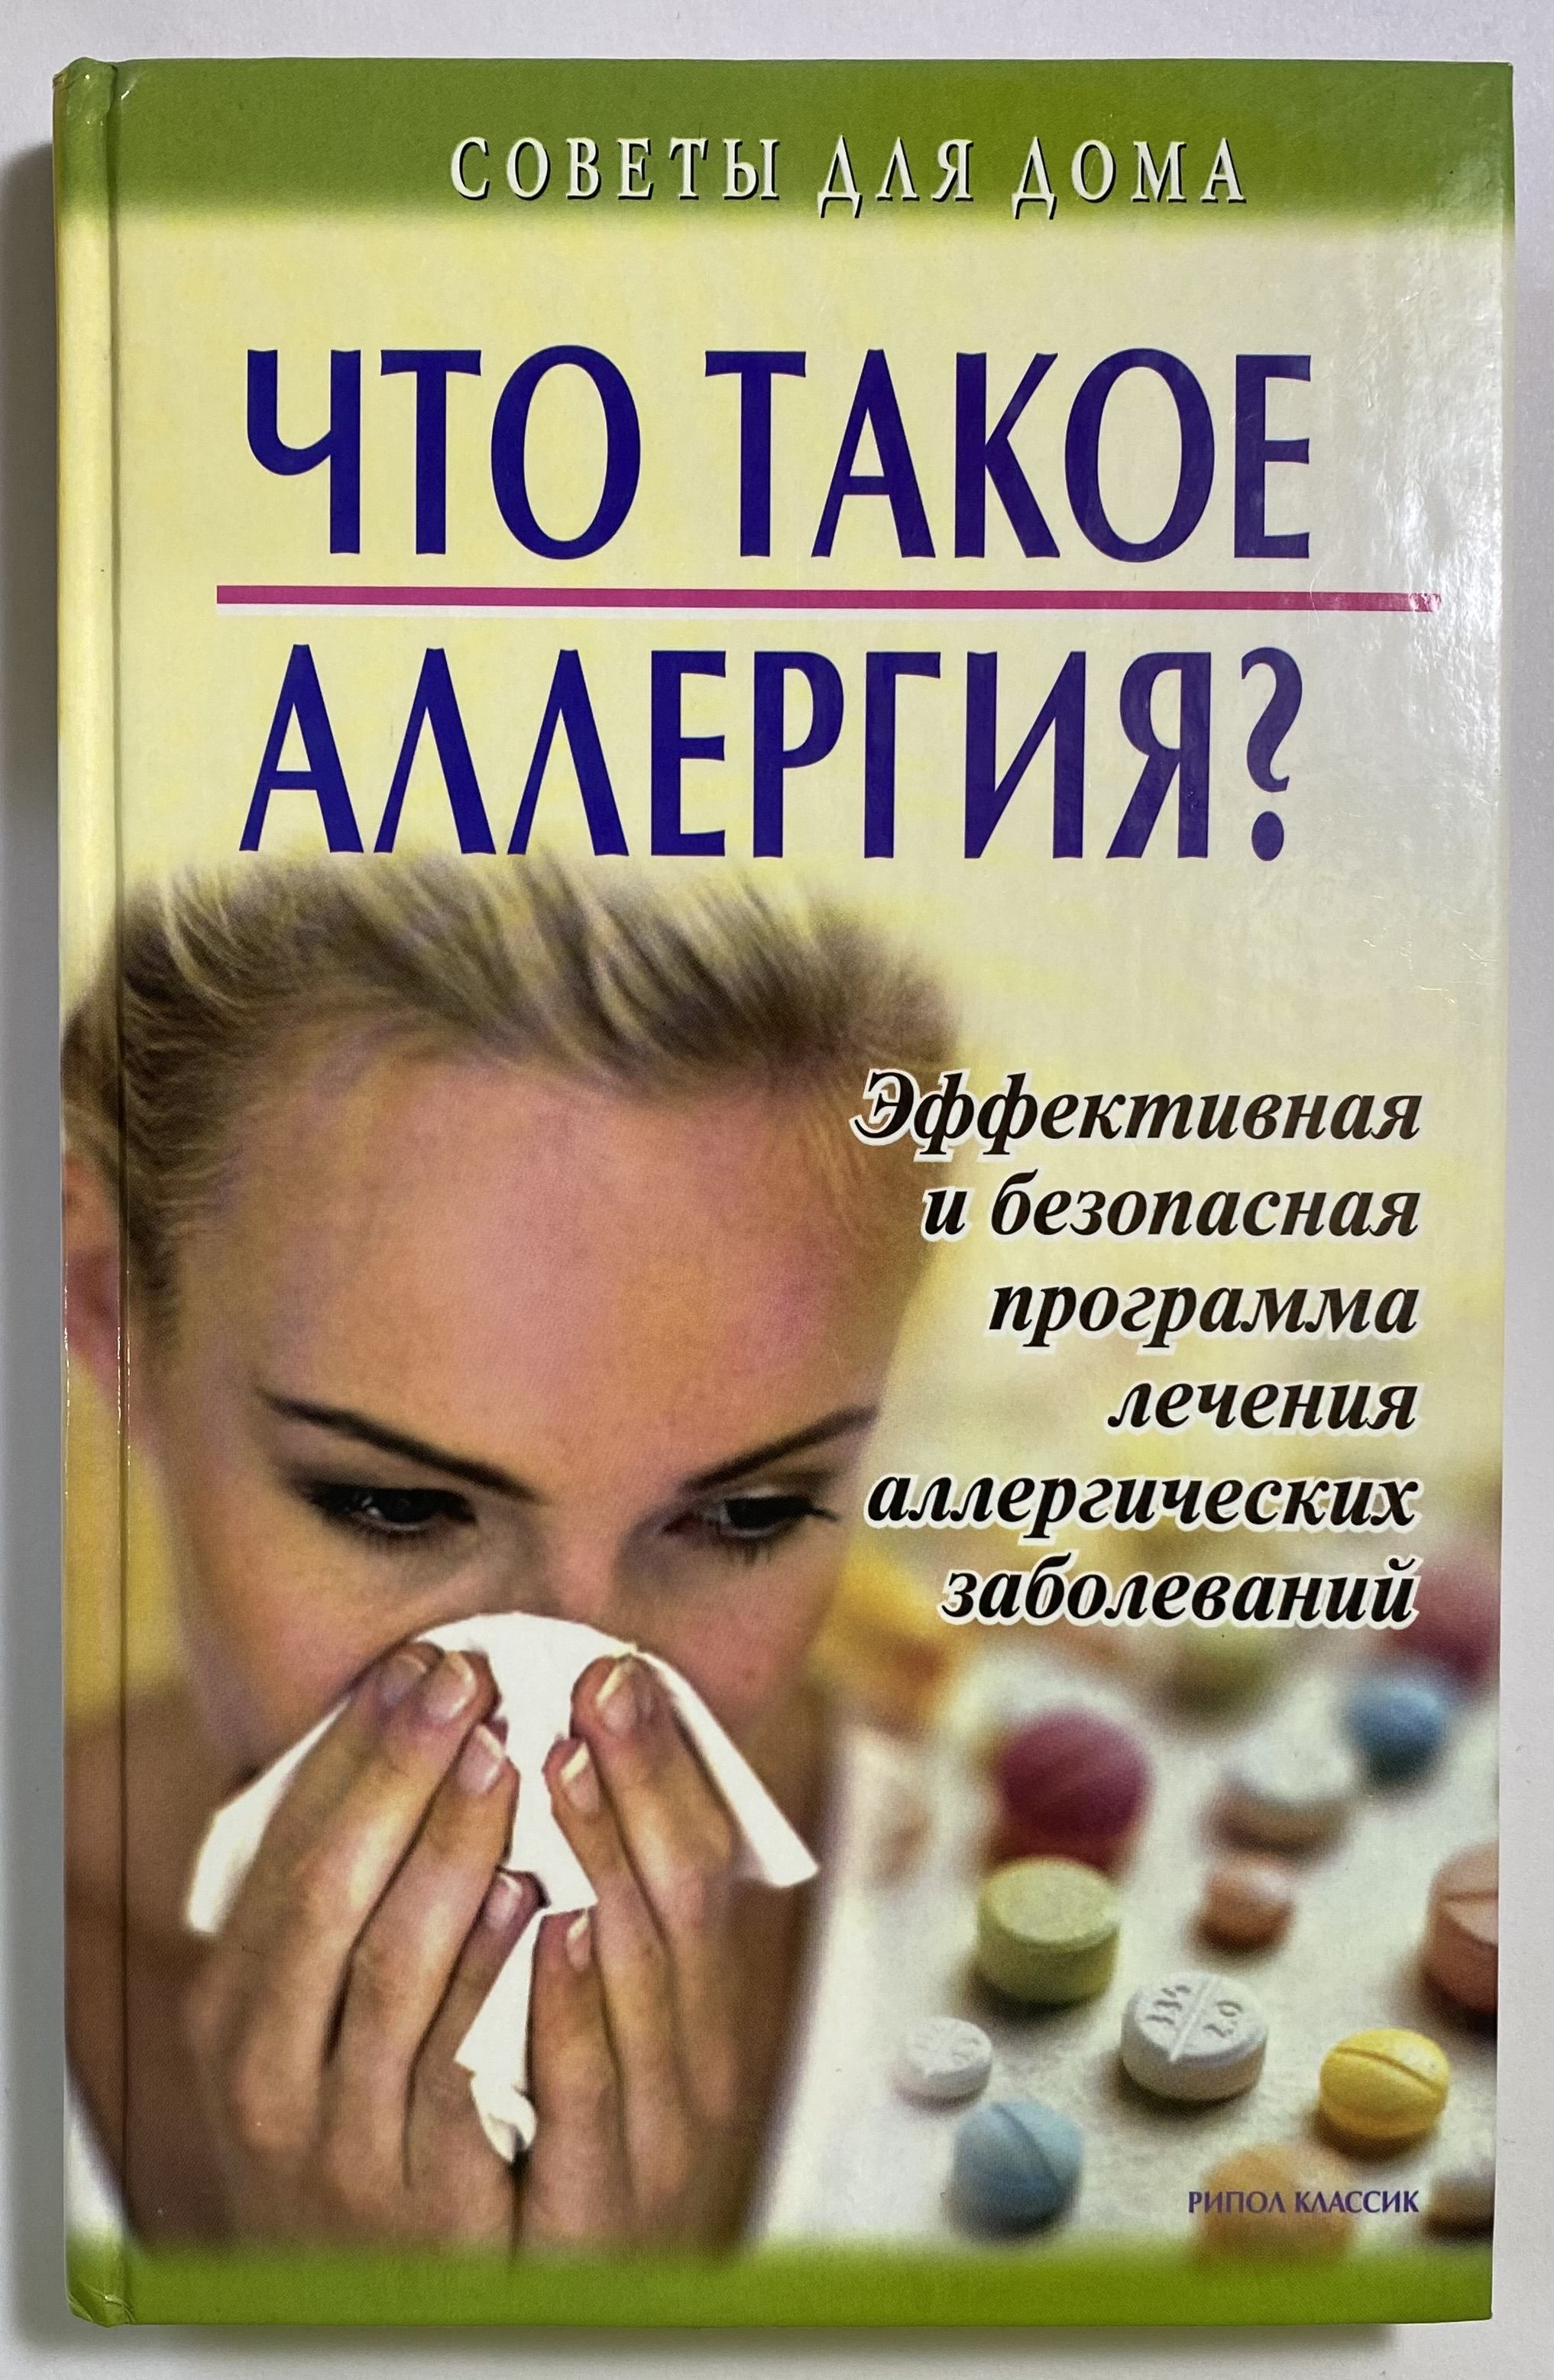 Причины заболеваний книга. Аллергические заболевания учебник. Аллергия психосоматика. Психосоматика книга. Психосоматика книги лучшие.